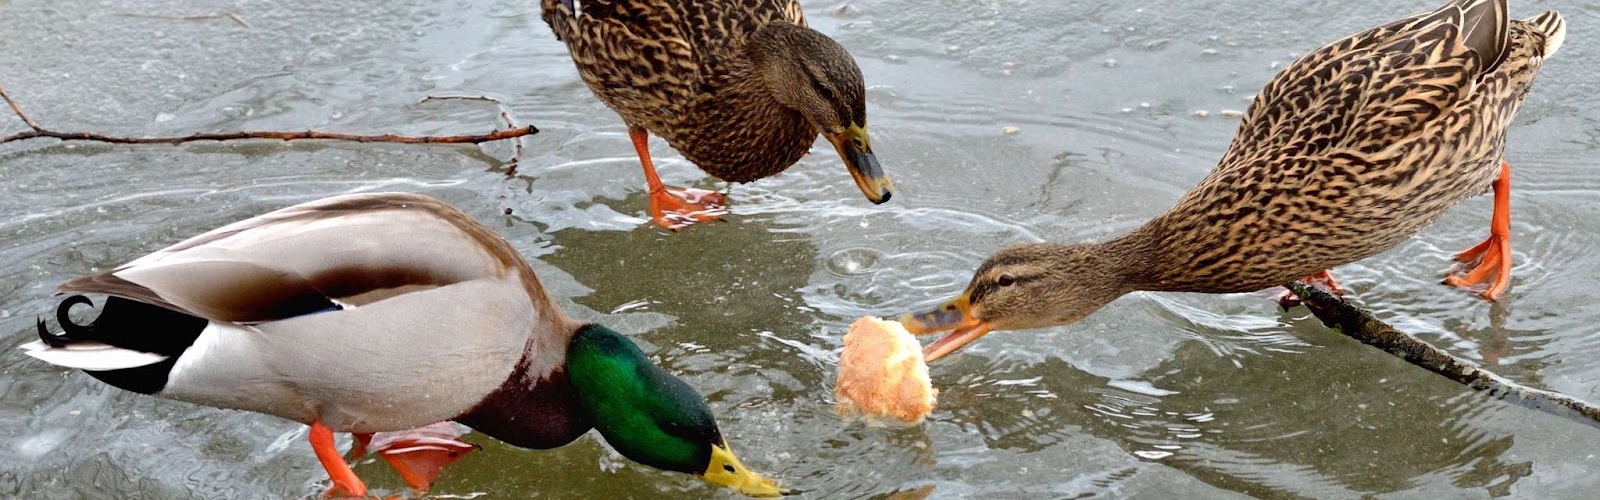 5 choses que vous ne saviez pas au sujet des canards - Canards du Lac Brome